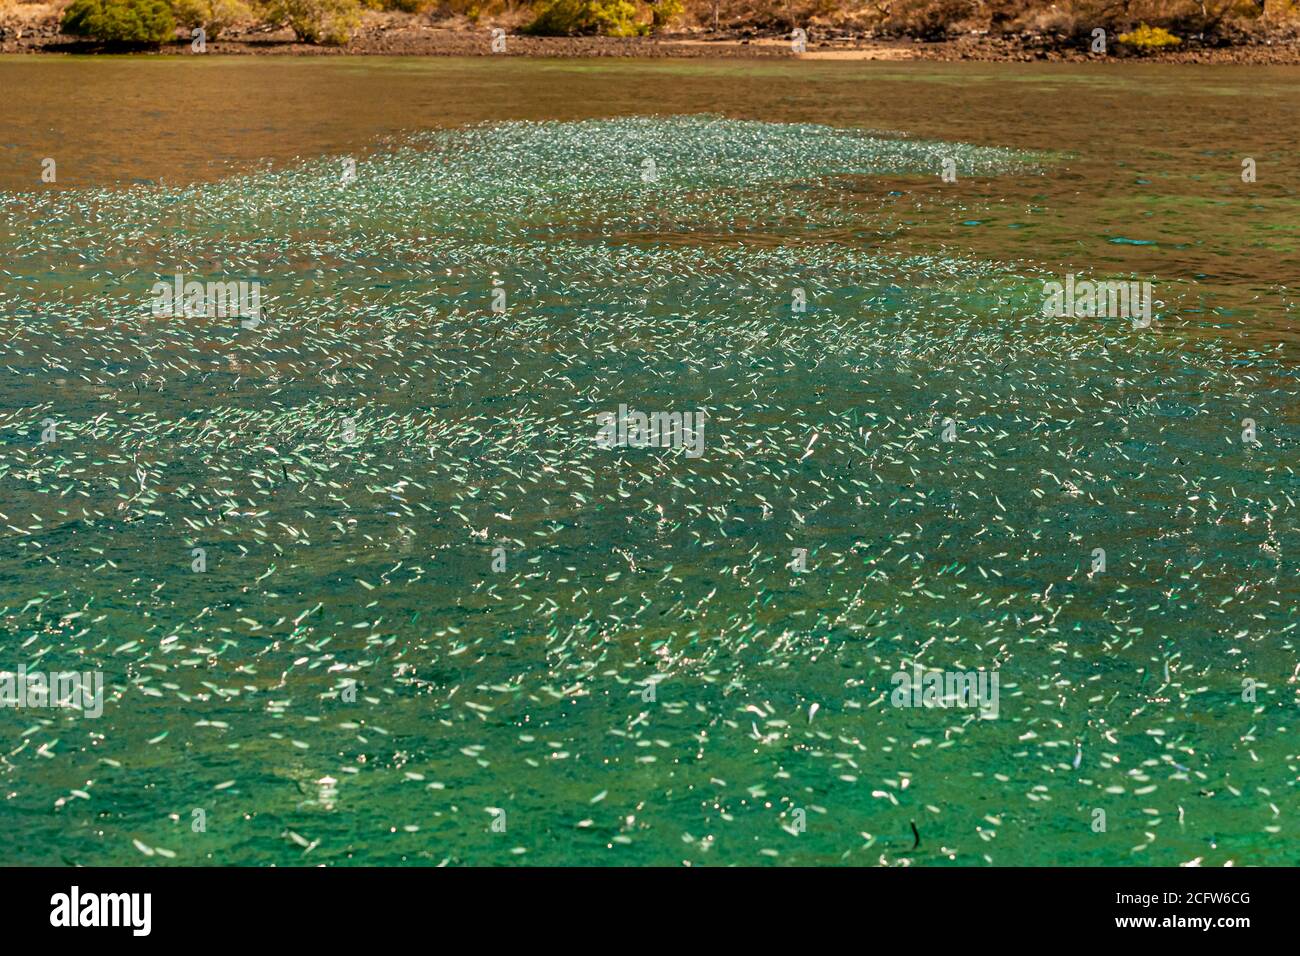 Sardellen springen massenweise aus dem Wasser, was auf das Vorhandensein von Raubfischen hinweist Stockfoto